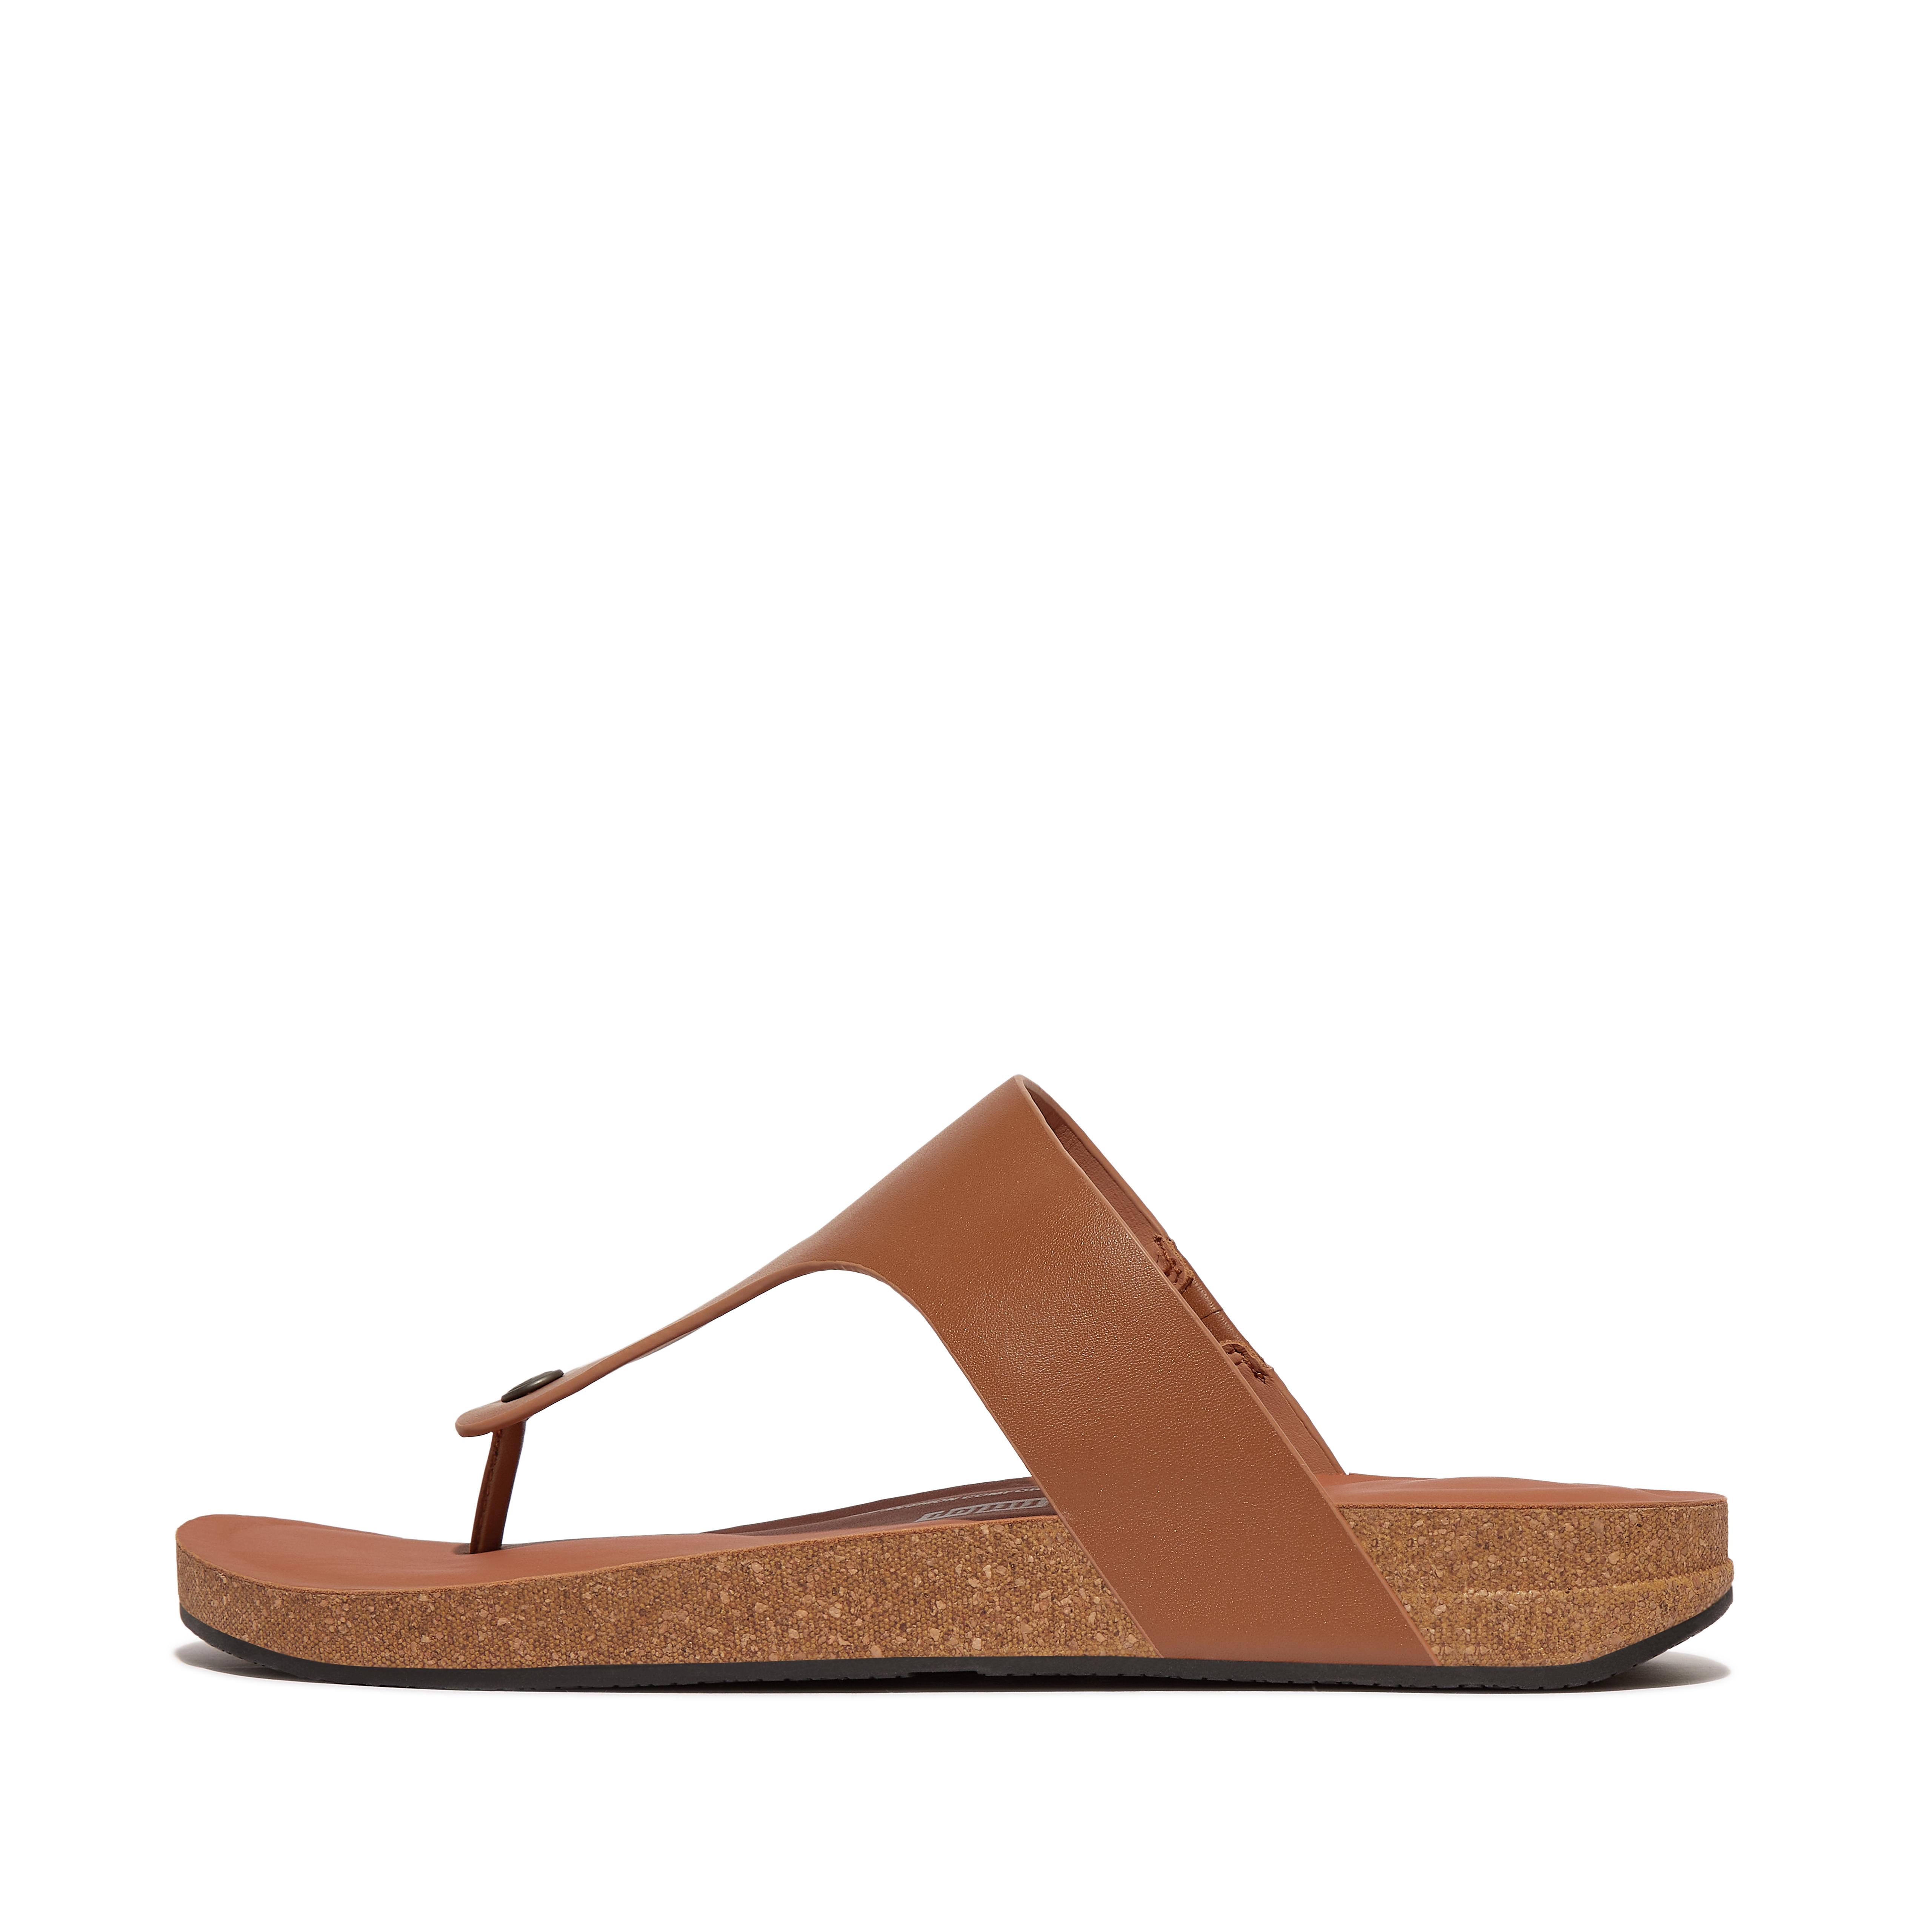 핏플랍 Fitflop Leather Toe-Post Sandals,Light Tan